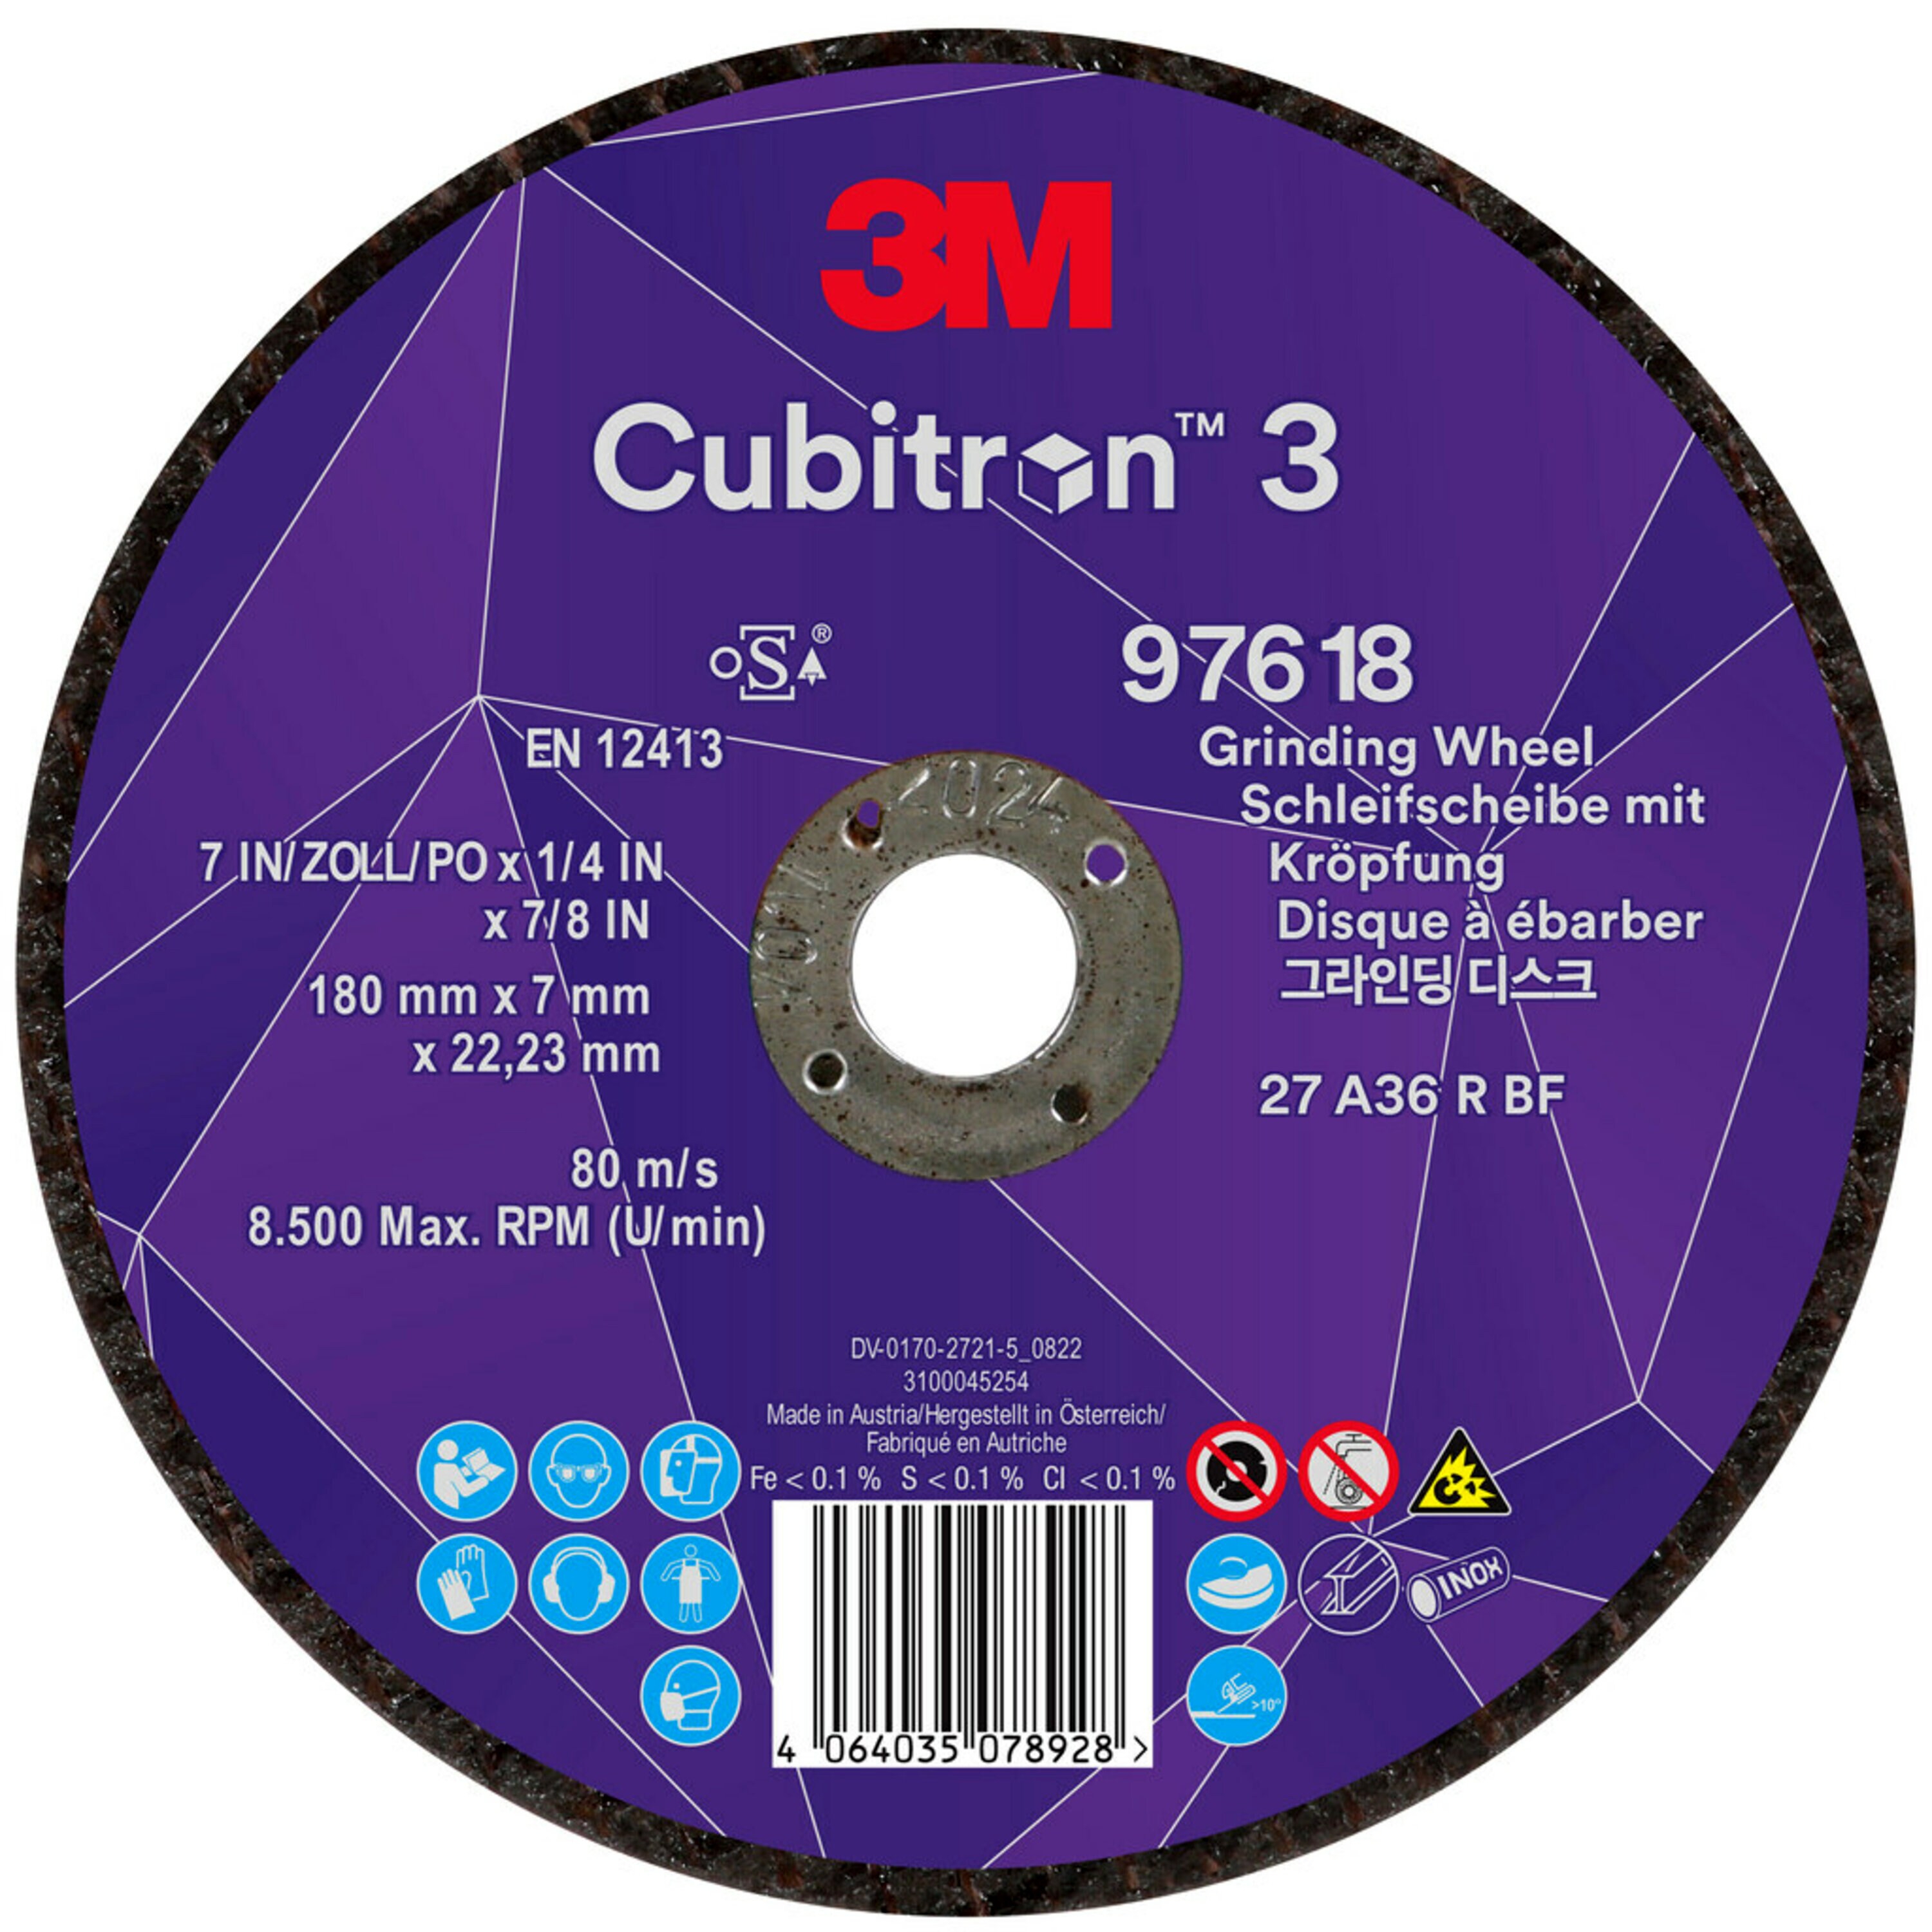 3M Cubitron 3 disco abrasivo, 180 mm, 7,0 mm, 22,23 mm, 36 , tipo 27, specialmente per la sgorbia # 97618